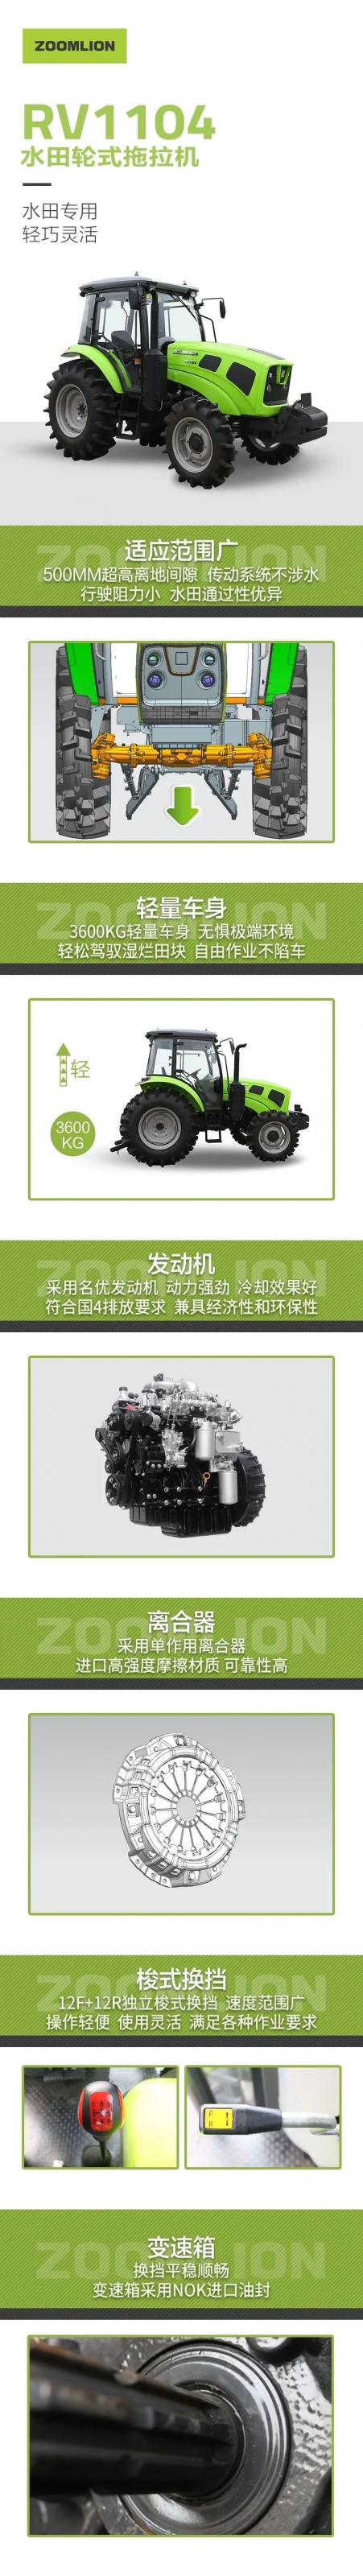 水田专用 轻巧灵活 | 中联RV1104水田轮式拖拉机